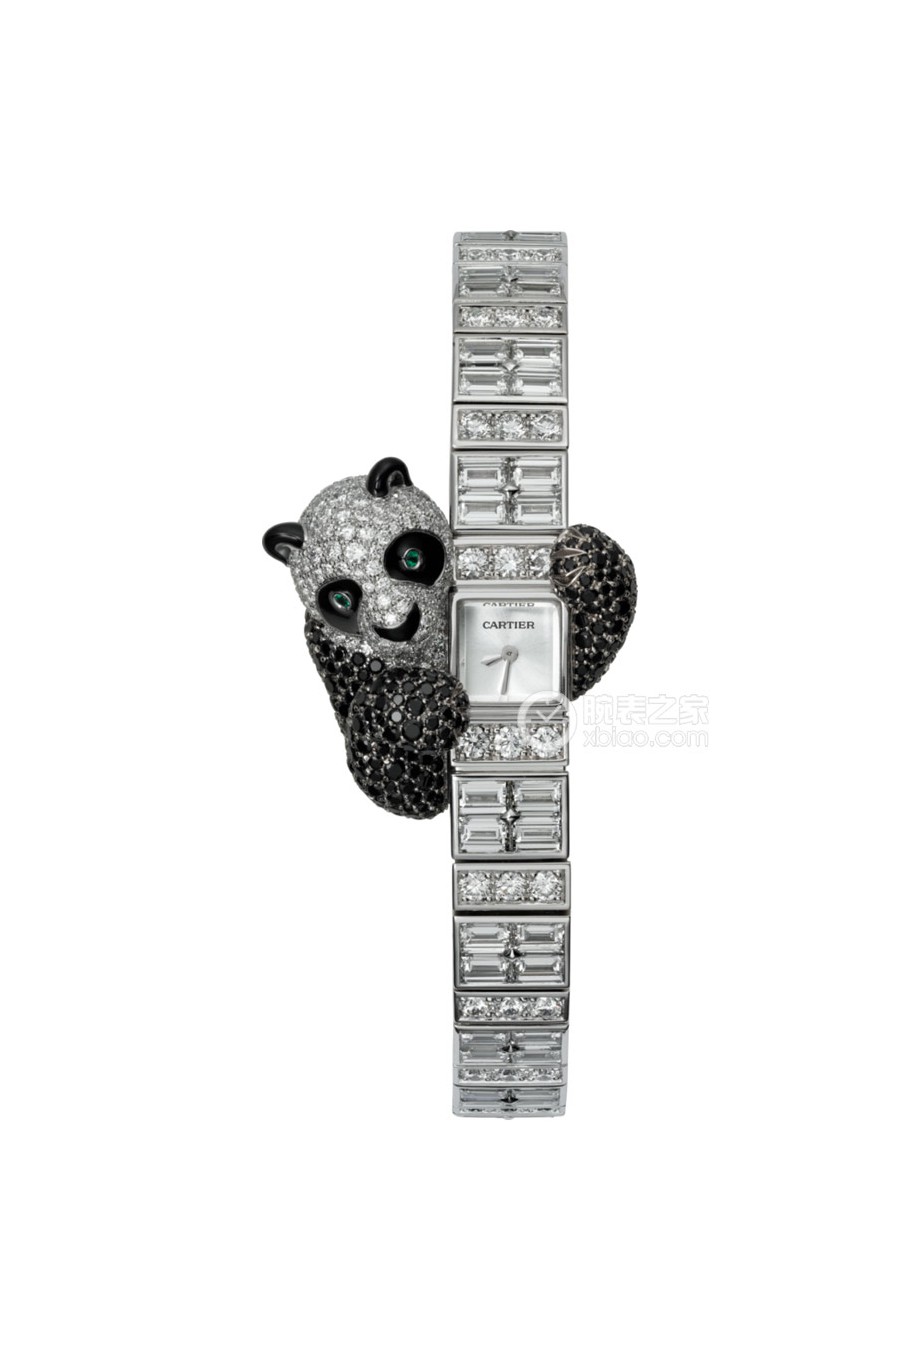 卡地亚创意宝石腕表系列HPI00746